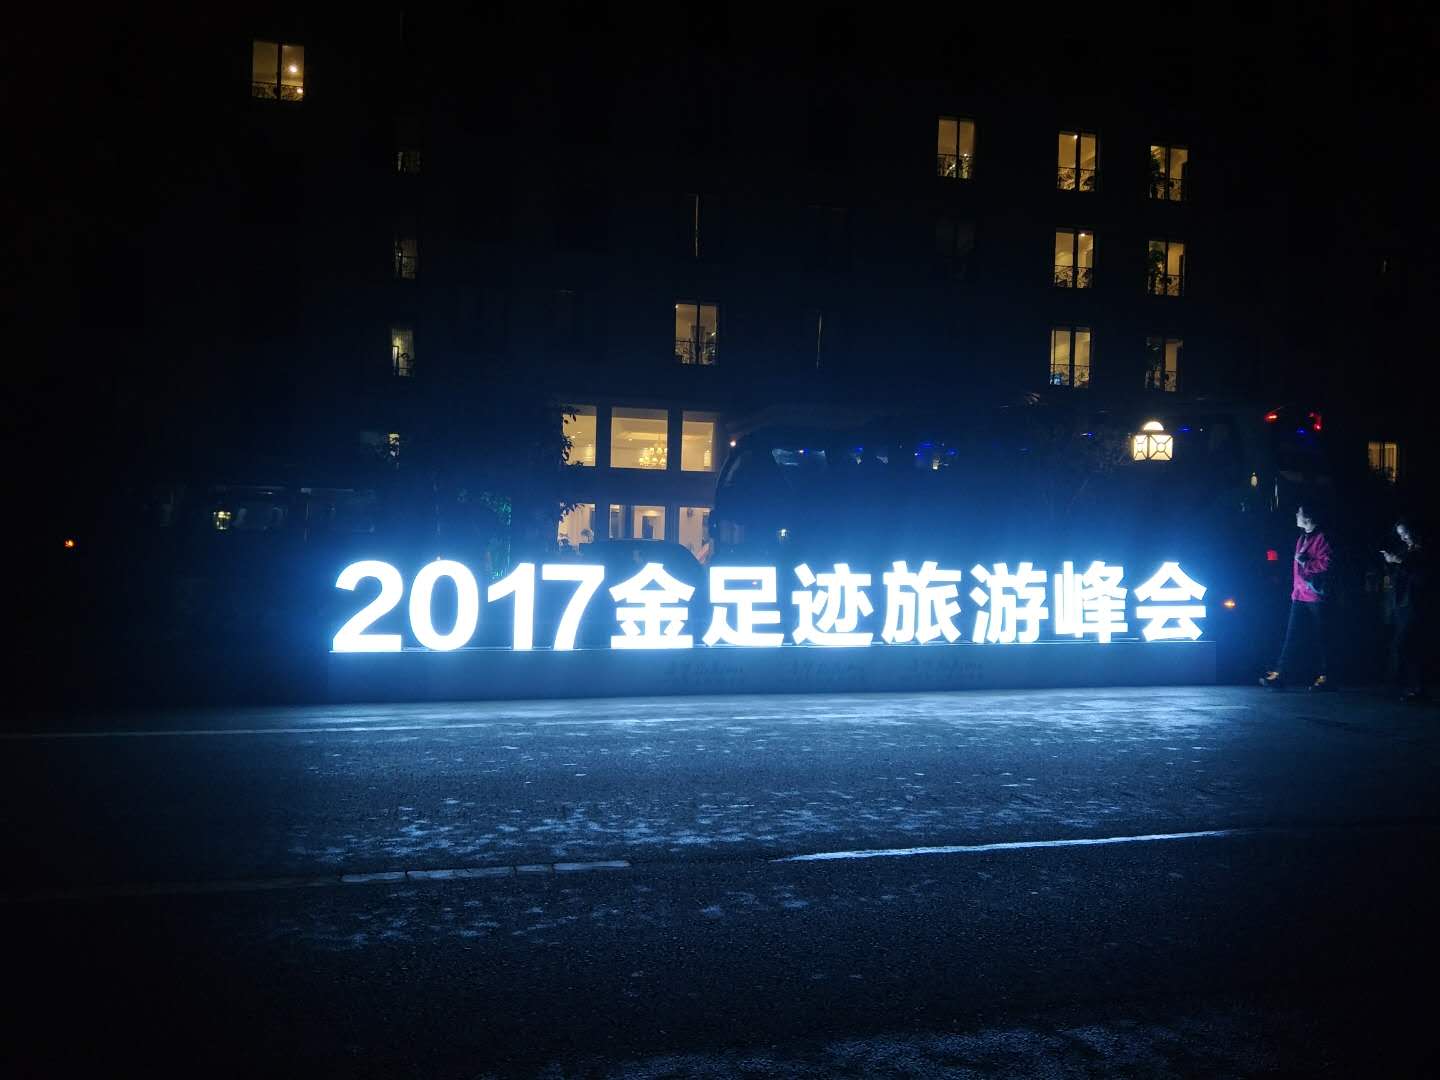 寻梦龙虎山―2017金足迹轨迹旅游峰会